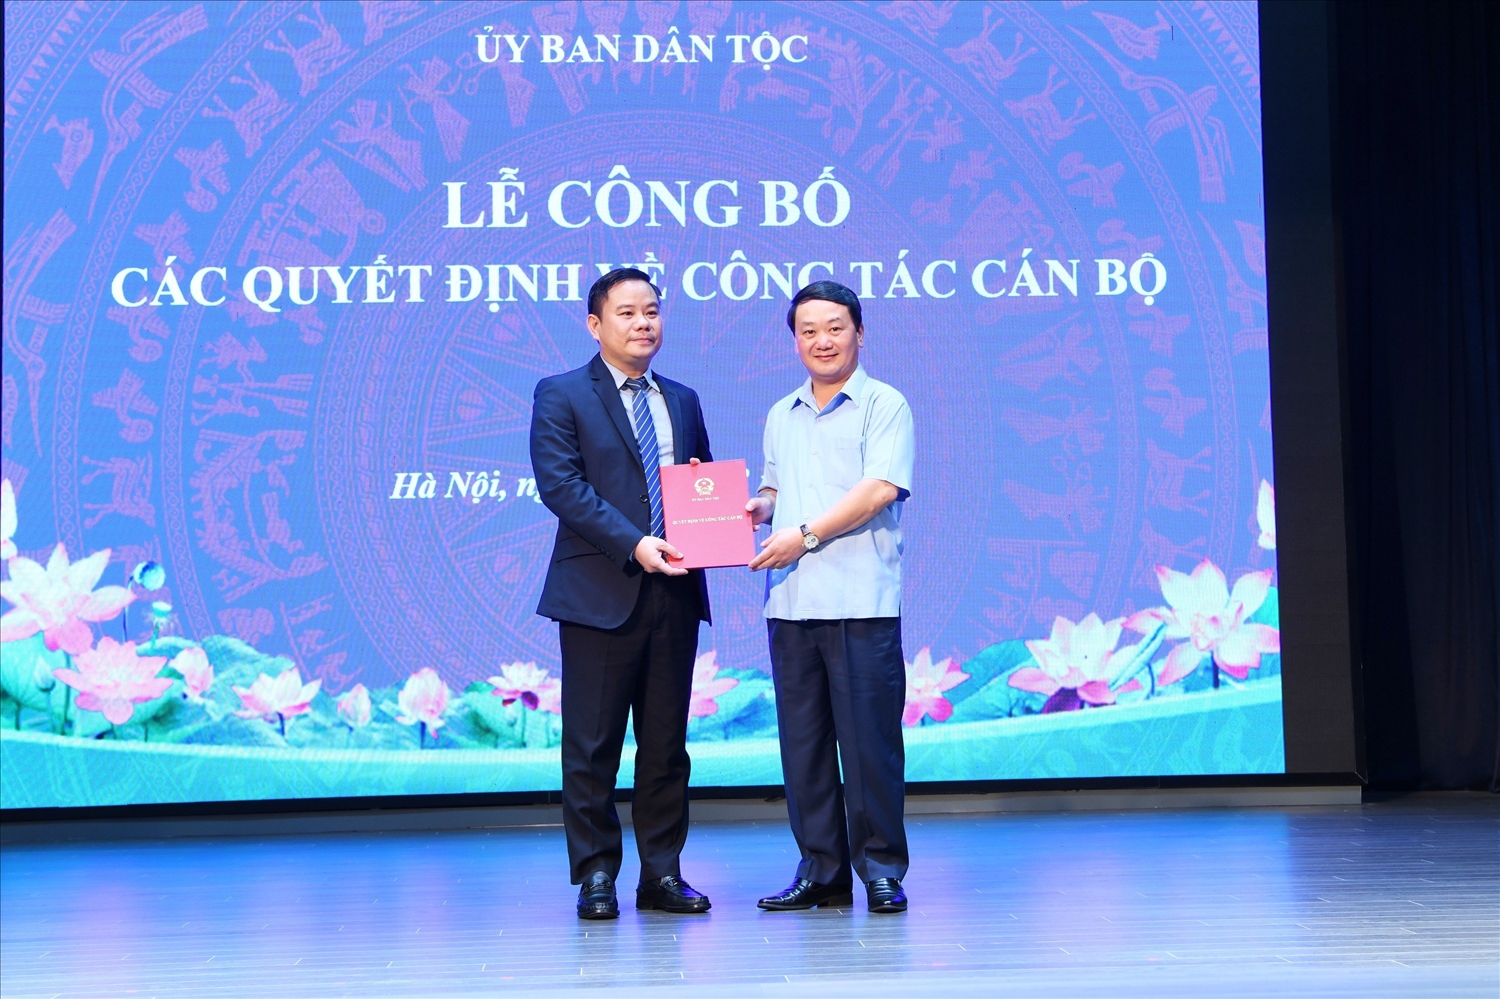 Bộ trưởng, Chủ nhiệm Hầu A Lềnh trao Quyết định cho ông Đào Xuân Quy giữ chức Phó Vụ trưởng Vụ Chính sách Dân tộc